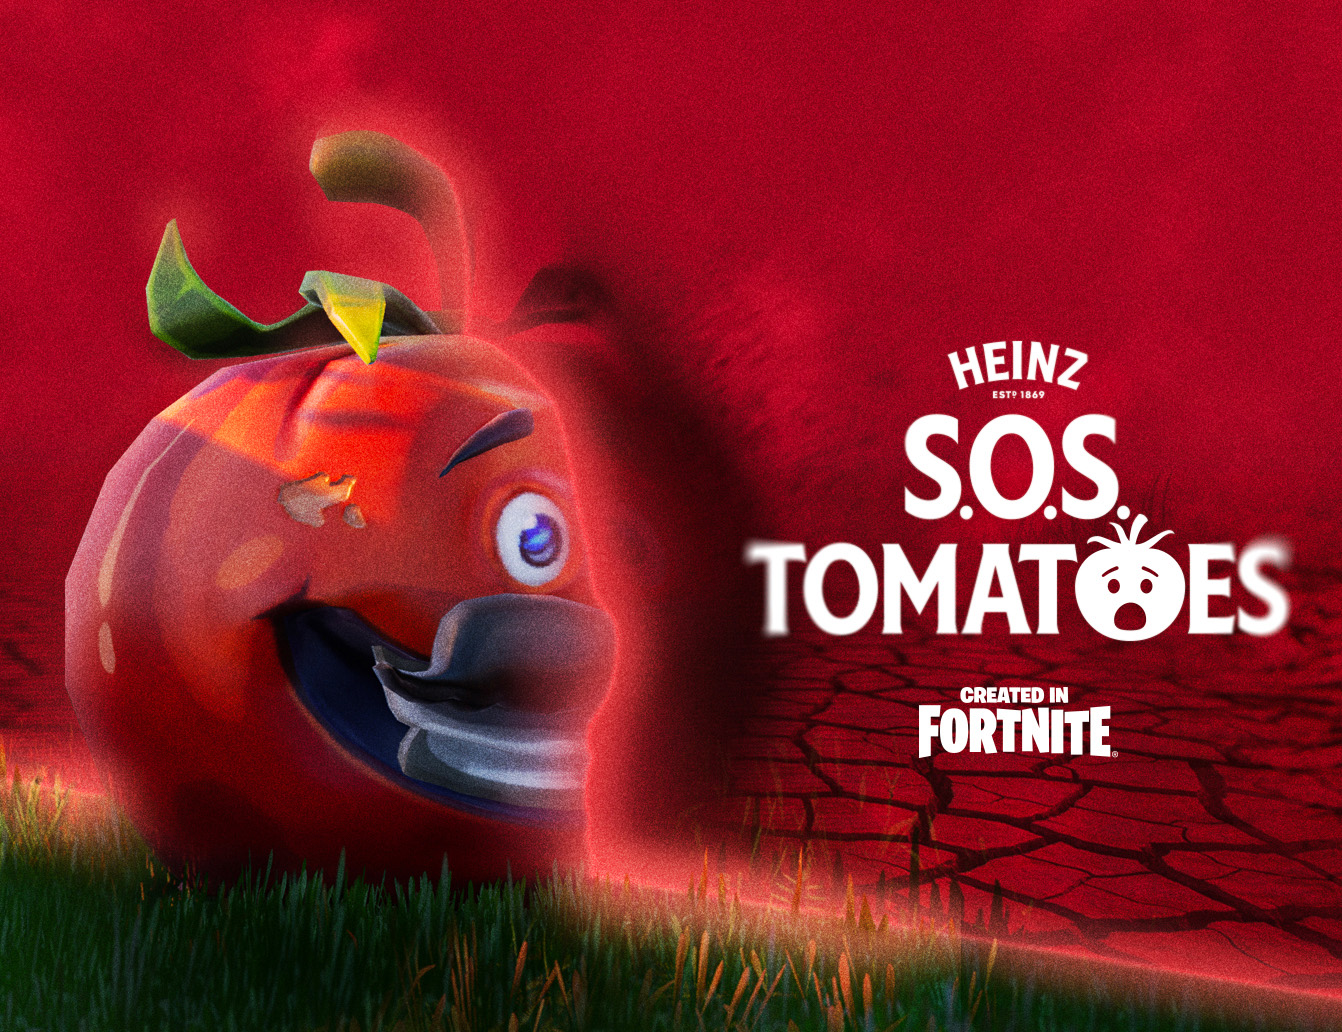 Heinz S.O.S Tomato Island